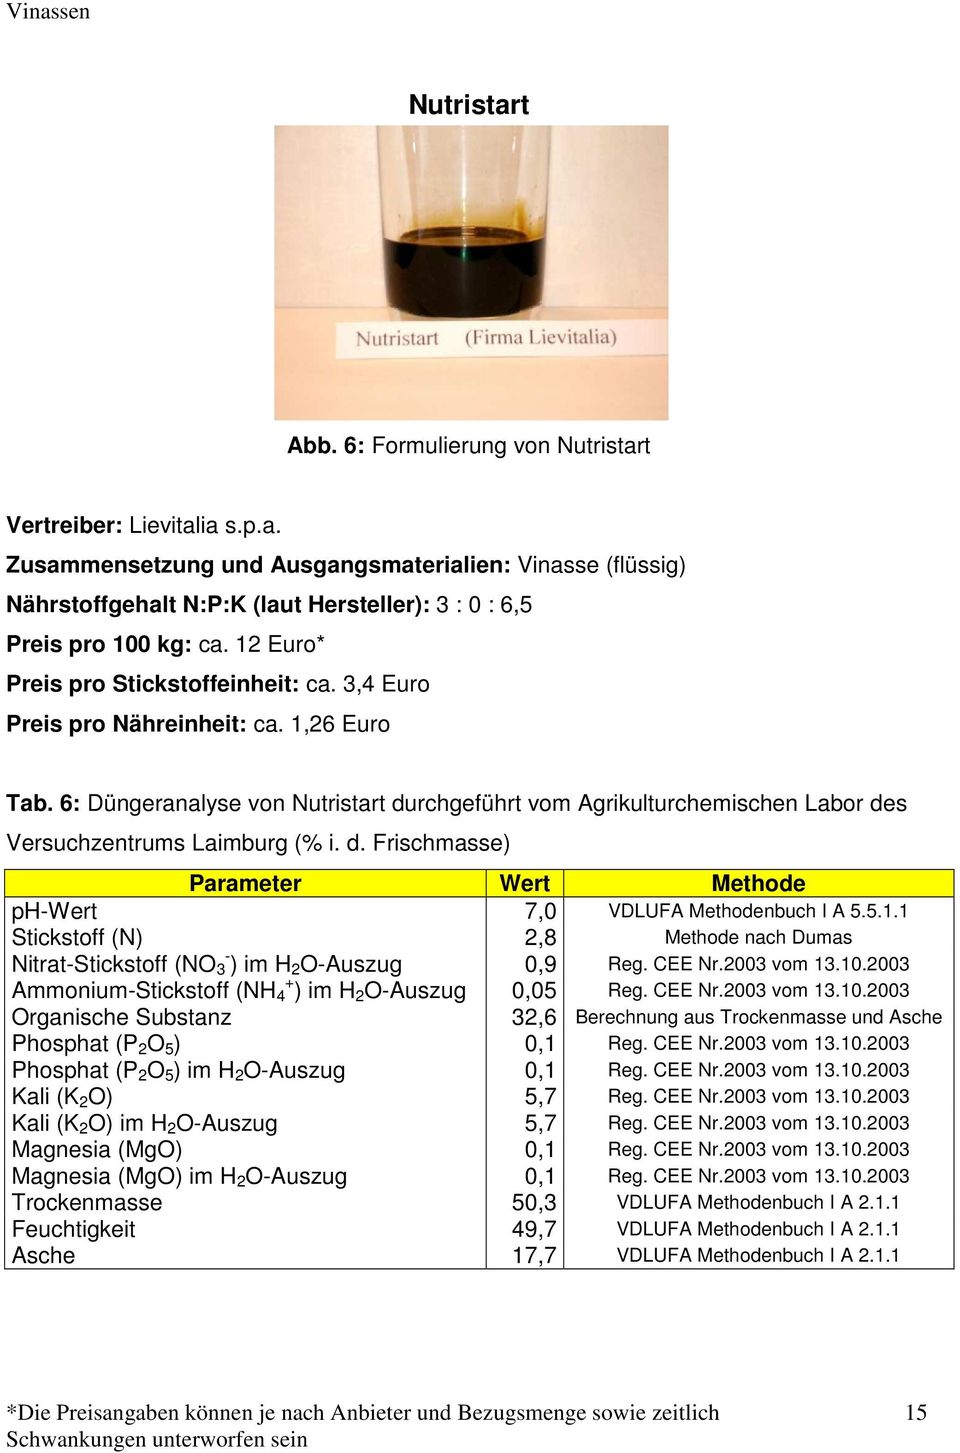 6: Düngeranalyse von Nutristart durchgeführt vom Agrikulturchemischen Labor des Versuchzentrums Laimburg (% i. d. Frischmasse) Parameter Wert Methode ph-wert 7,0 VDLUFA Methodenbuch I A 5.5.1.